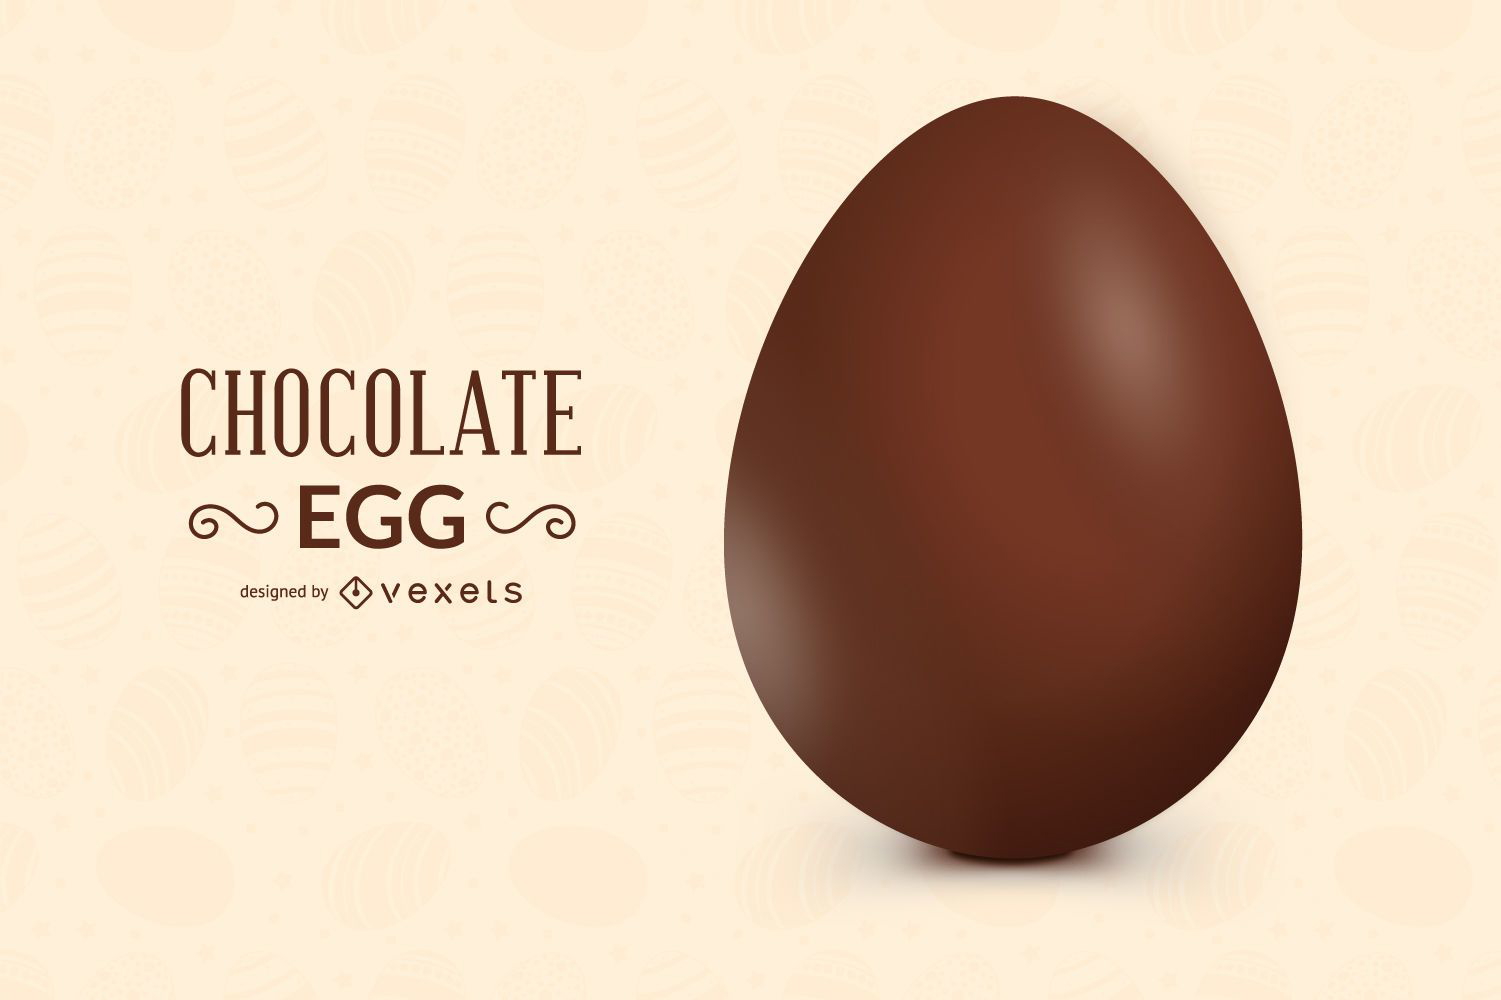 Diseño de huevo de chocolate 3D